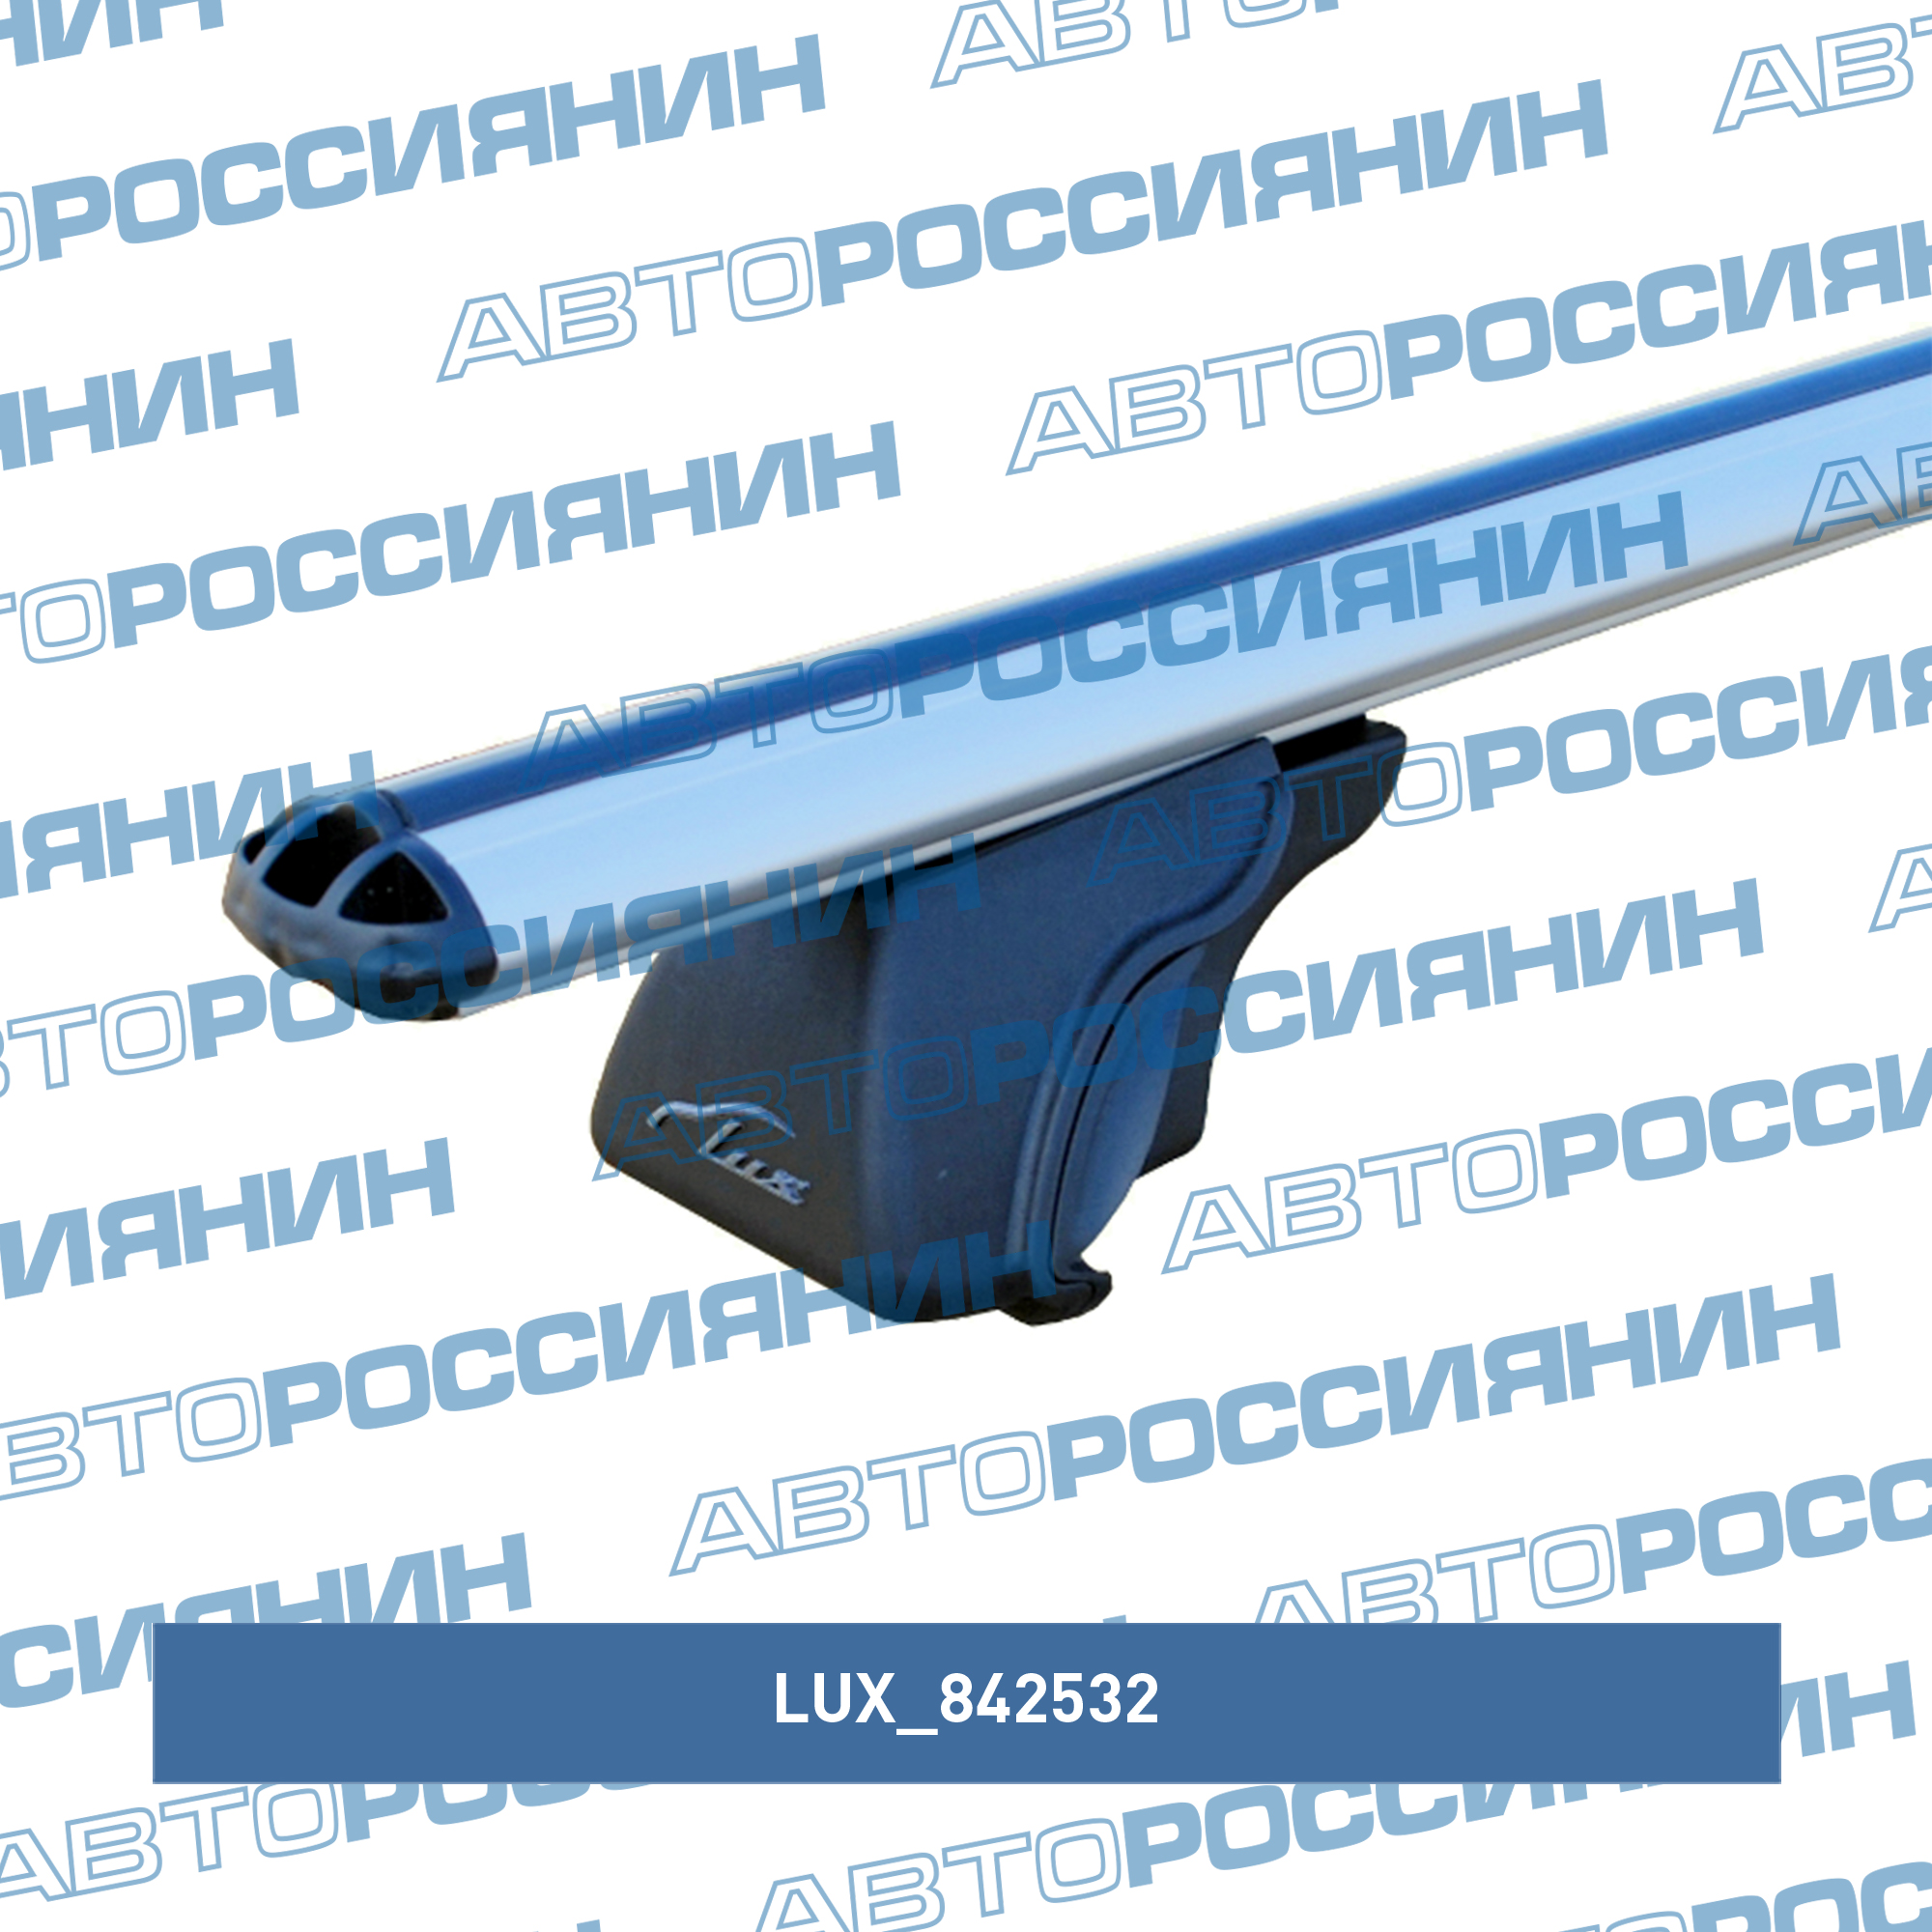 Багажная система LUX Классик с дугами 1,3м аэро-классик (53мм) для а/м с рейлингами LUX 842532